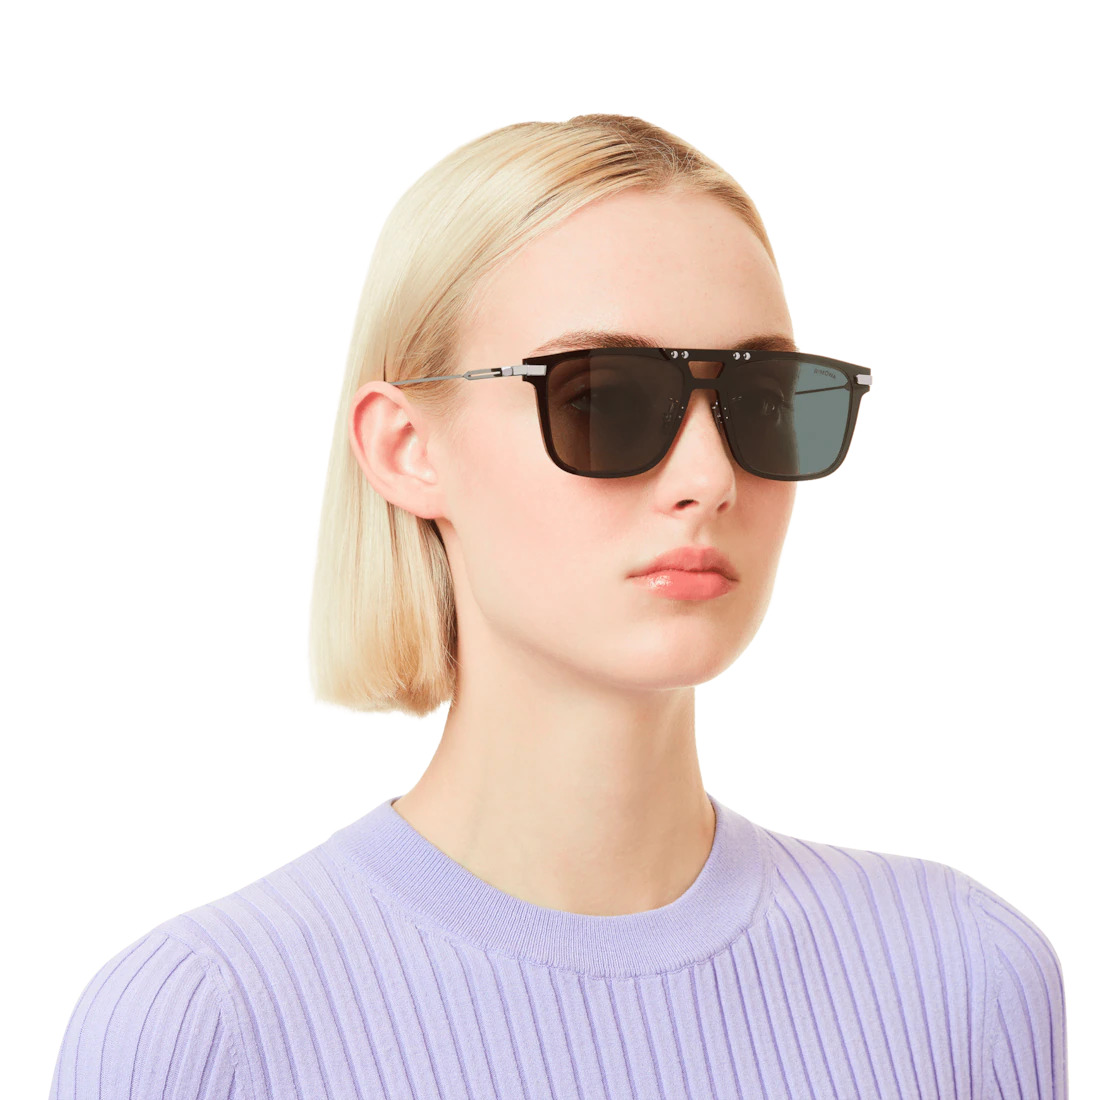 Eyewear Square Black Smoke Polarized Sunglasses - 4